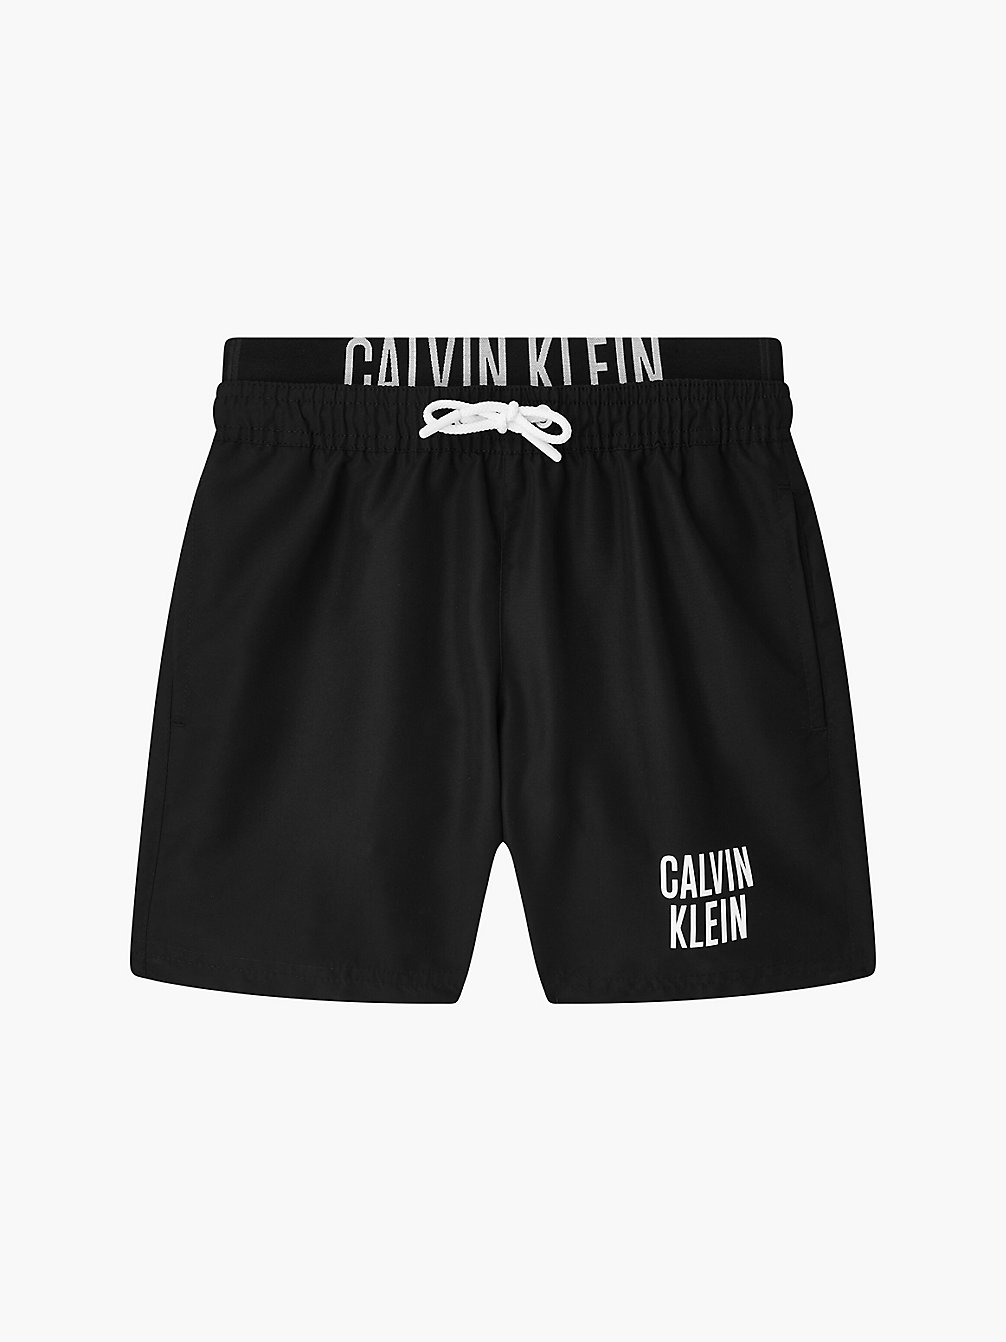 PVH BLACK Badeshorts Für Jungen - Intense Power undefined Jungen Calvin Klein